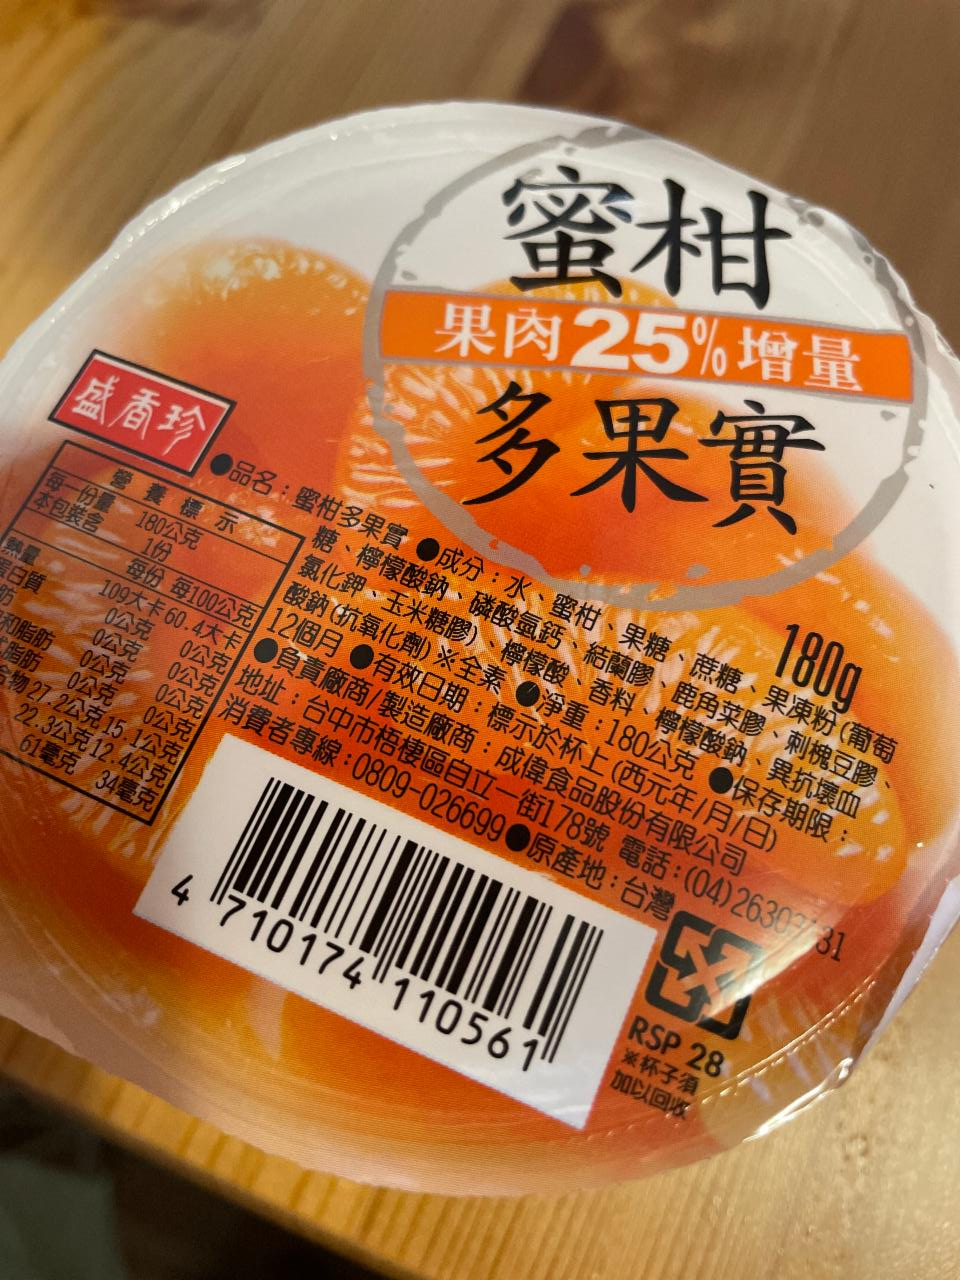 Fotografie - ovocné želé mandarinka Asia express food